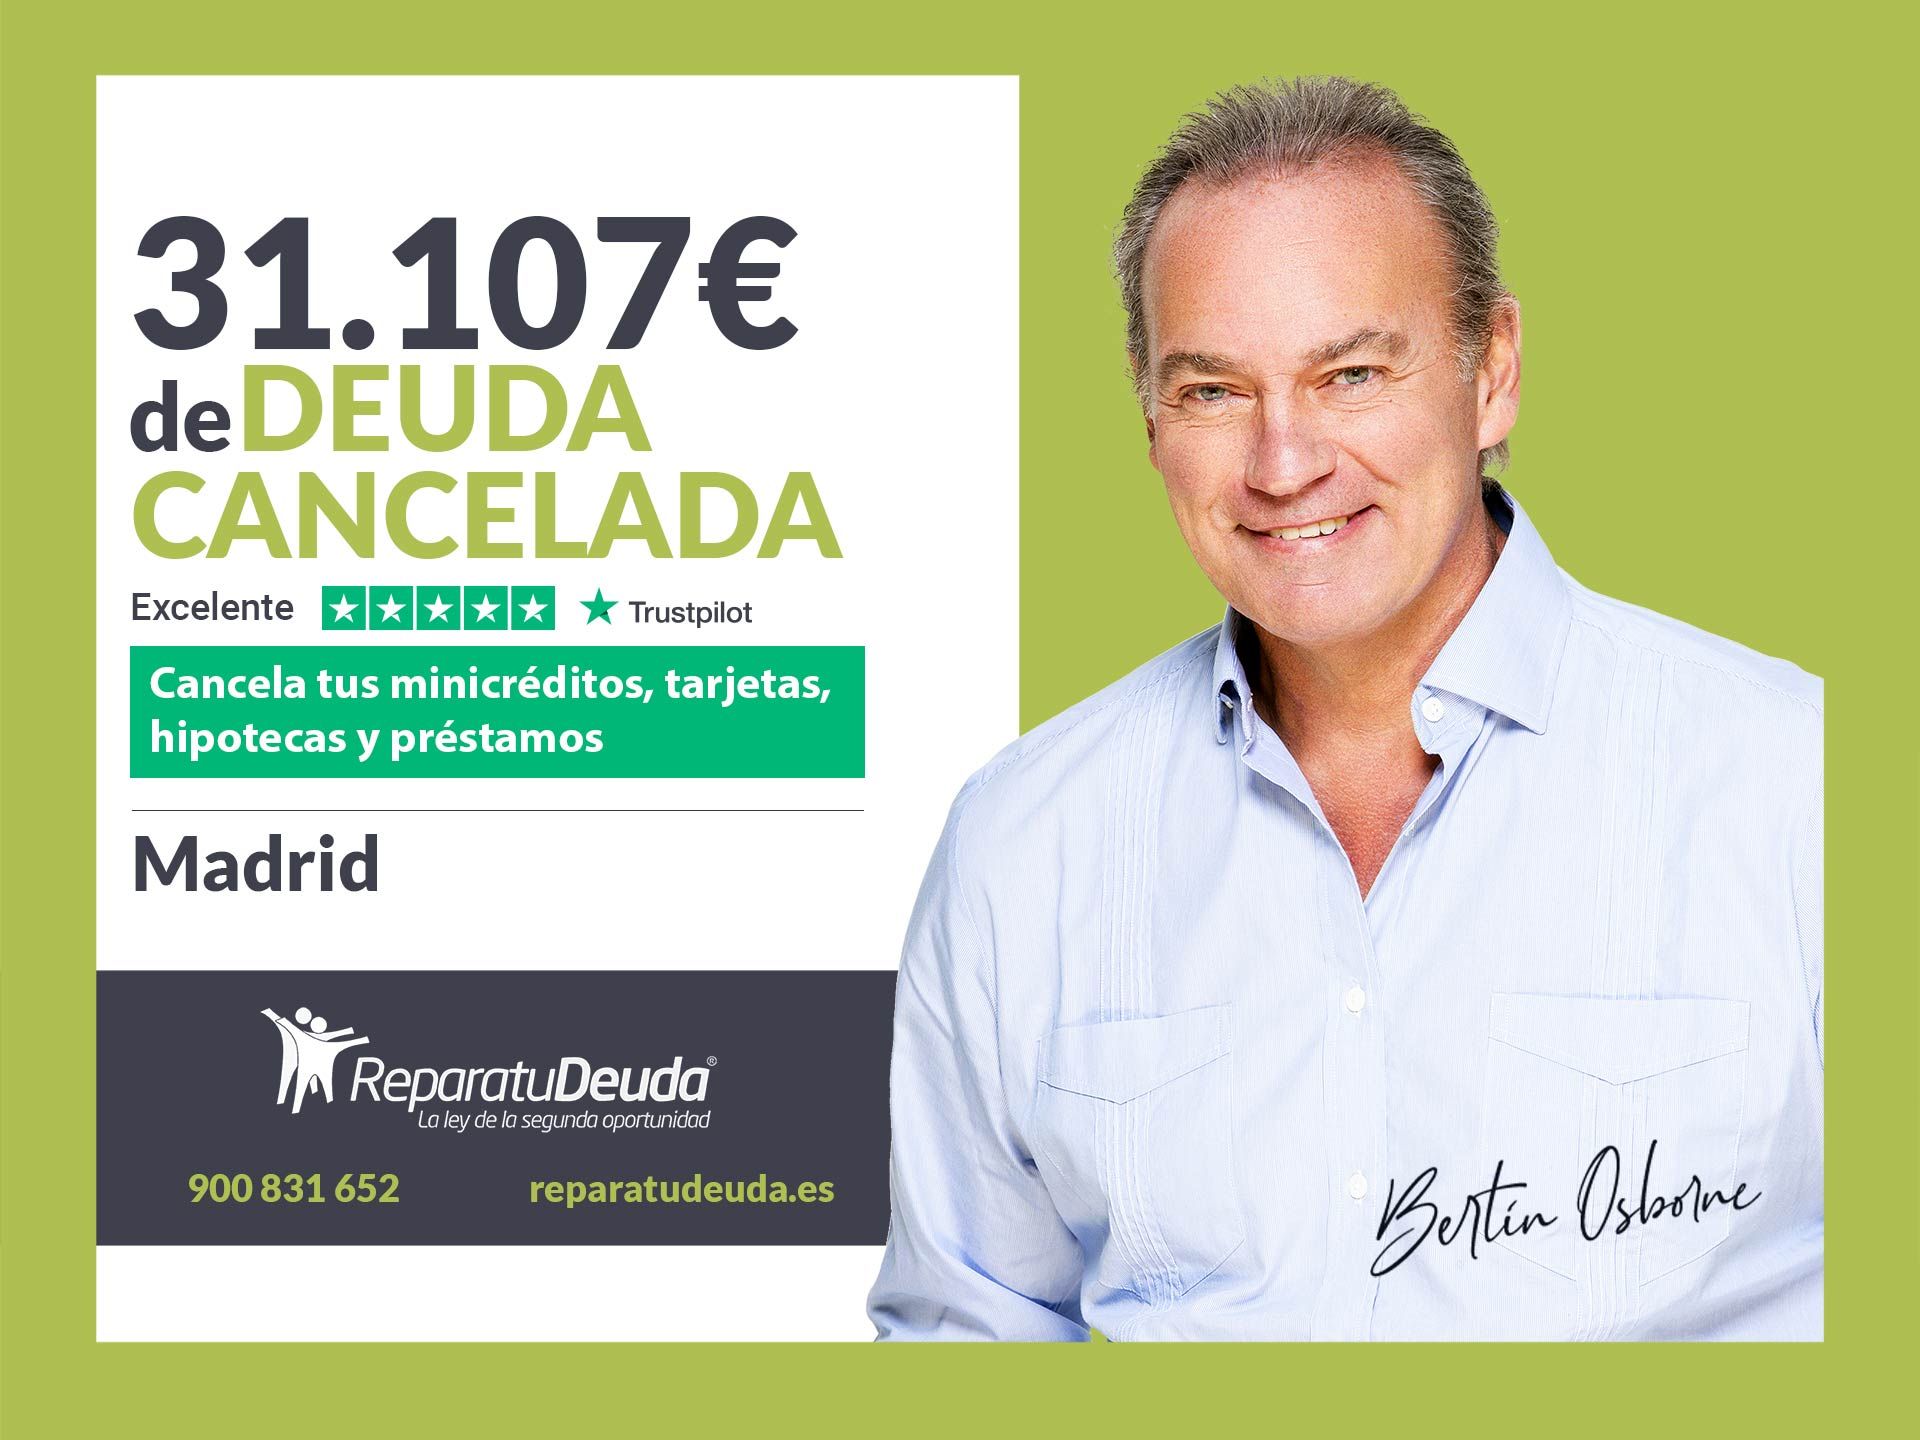 Repara tu Deuda Abogados cancela 31.107? en Madrid gracias a la Ley de Segunda Oportunidad